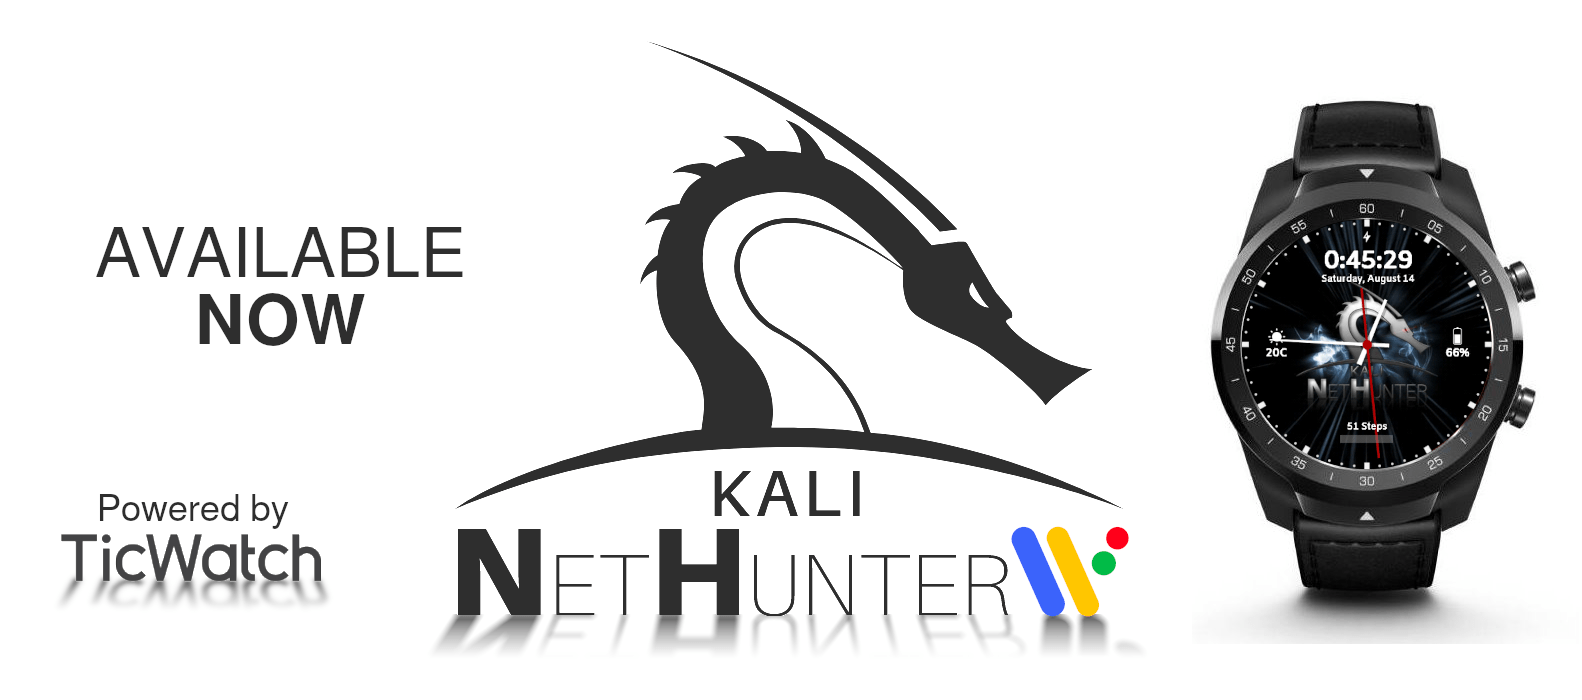 Kali Linux 2021.3 läuft per Kali NetHunter auch auf der Smartwatch